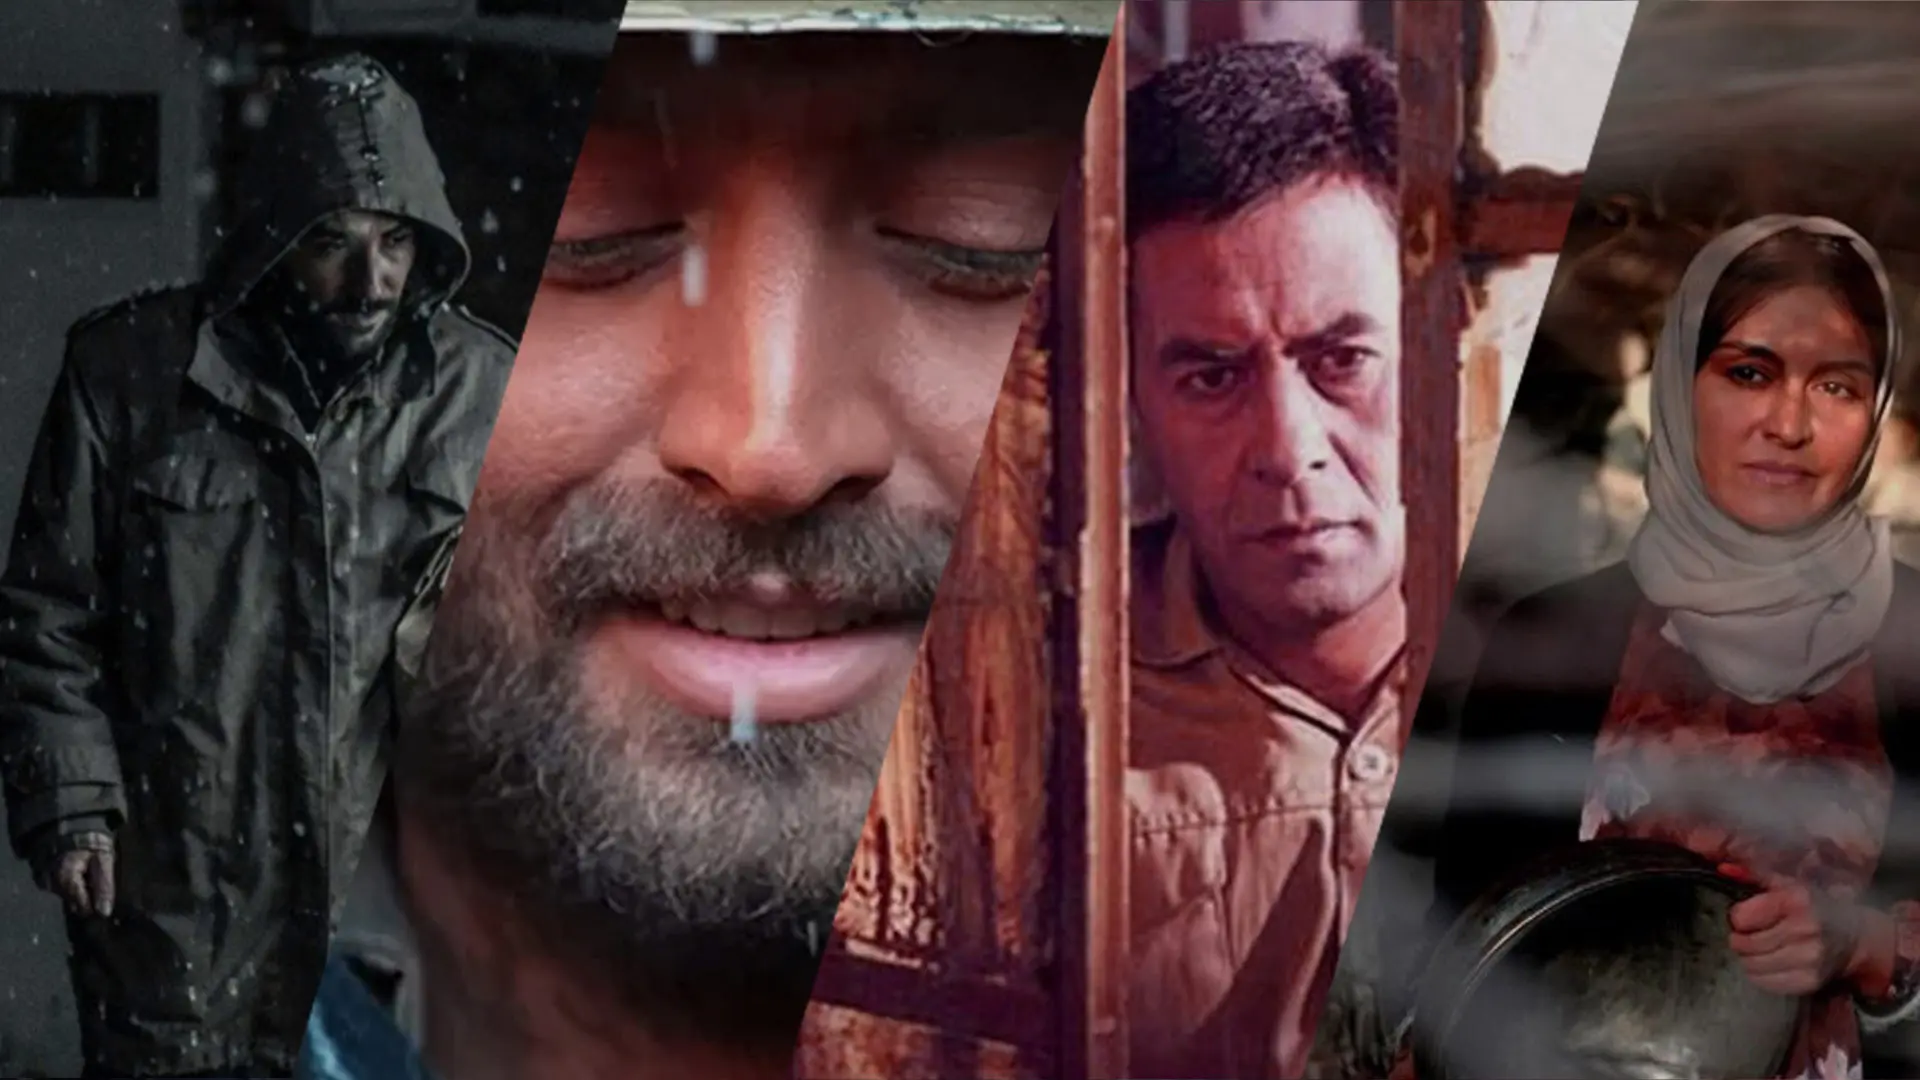 بهترین فیلم های جنگی ایرانی | از باشو غریبه کوچک تا دوئل